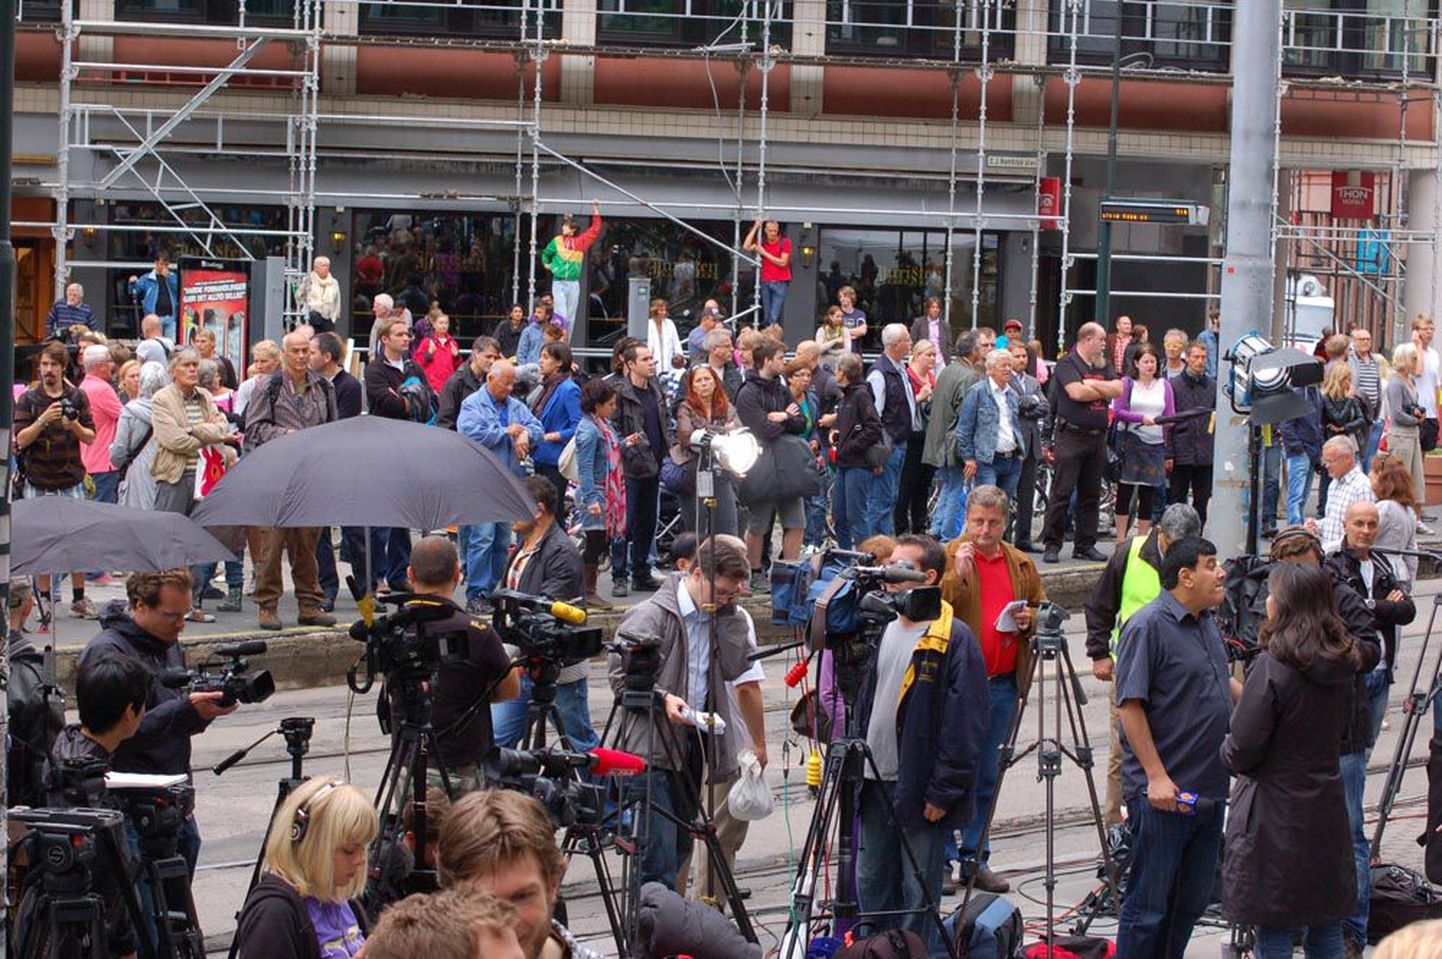 Eile veidi enne kella 14 oli Oslo kohtumaja juures umbes tuhandepealine rahvamass. Kogu piirkond oli kaameraid-mikrofone täis. Korrakaitsjad valvasid, et hoonesse,    kus algas istung veresauna korraldamise omaks võtnud Anders Behring Breiviki üle, ei pääseks liigseid inimesi.